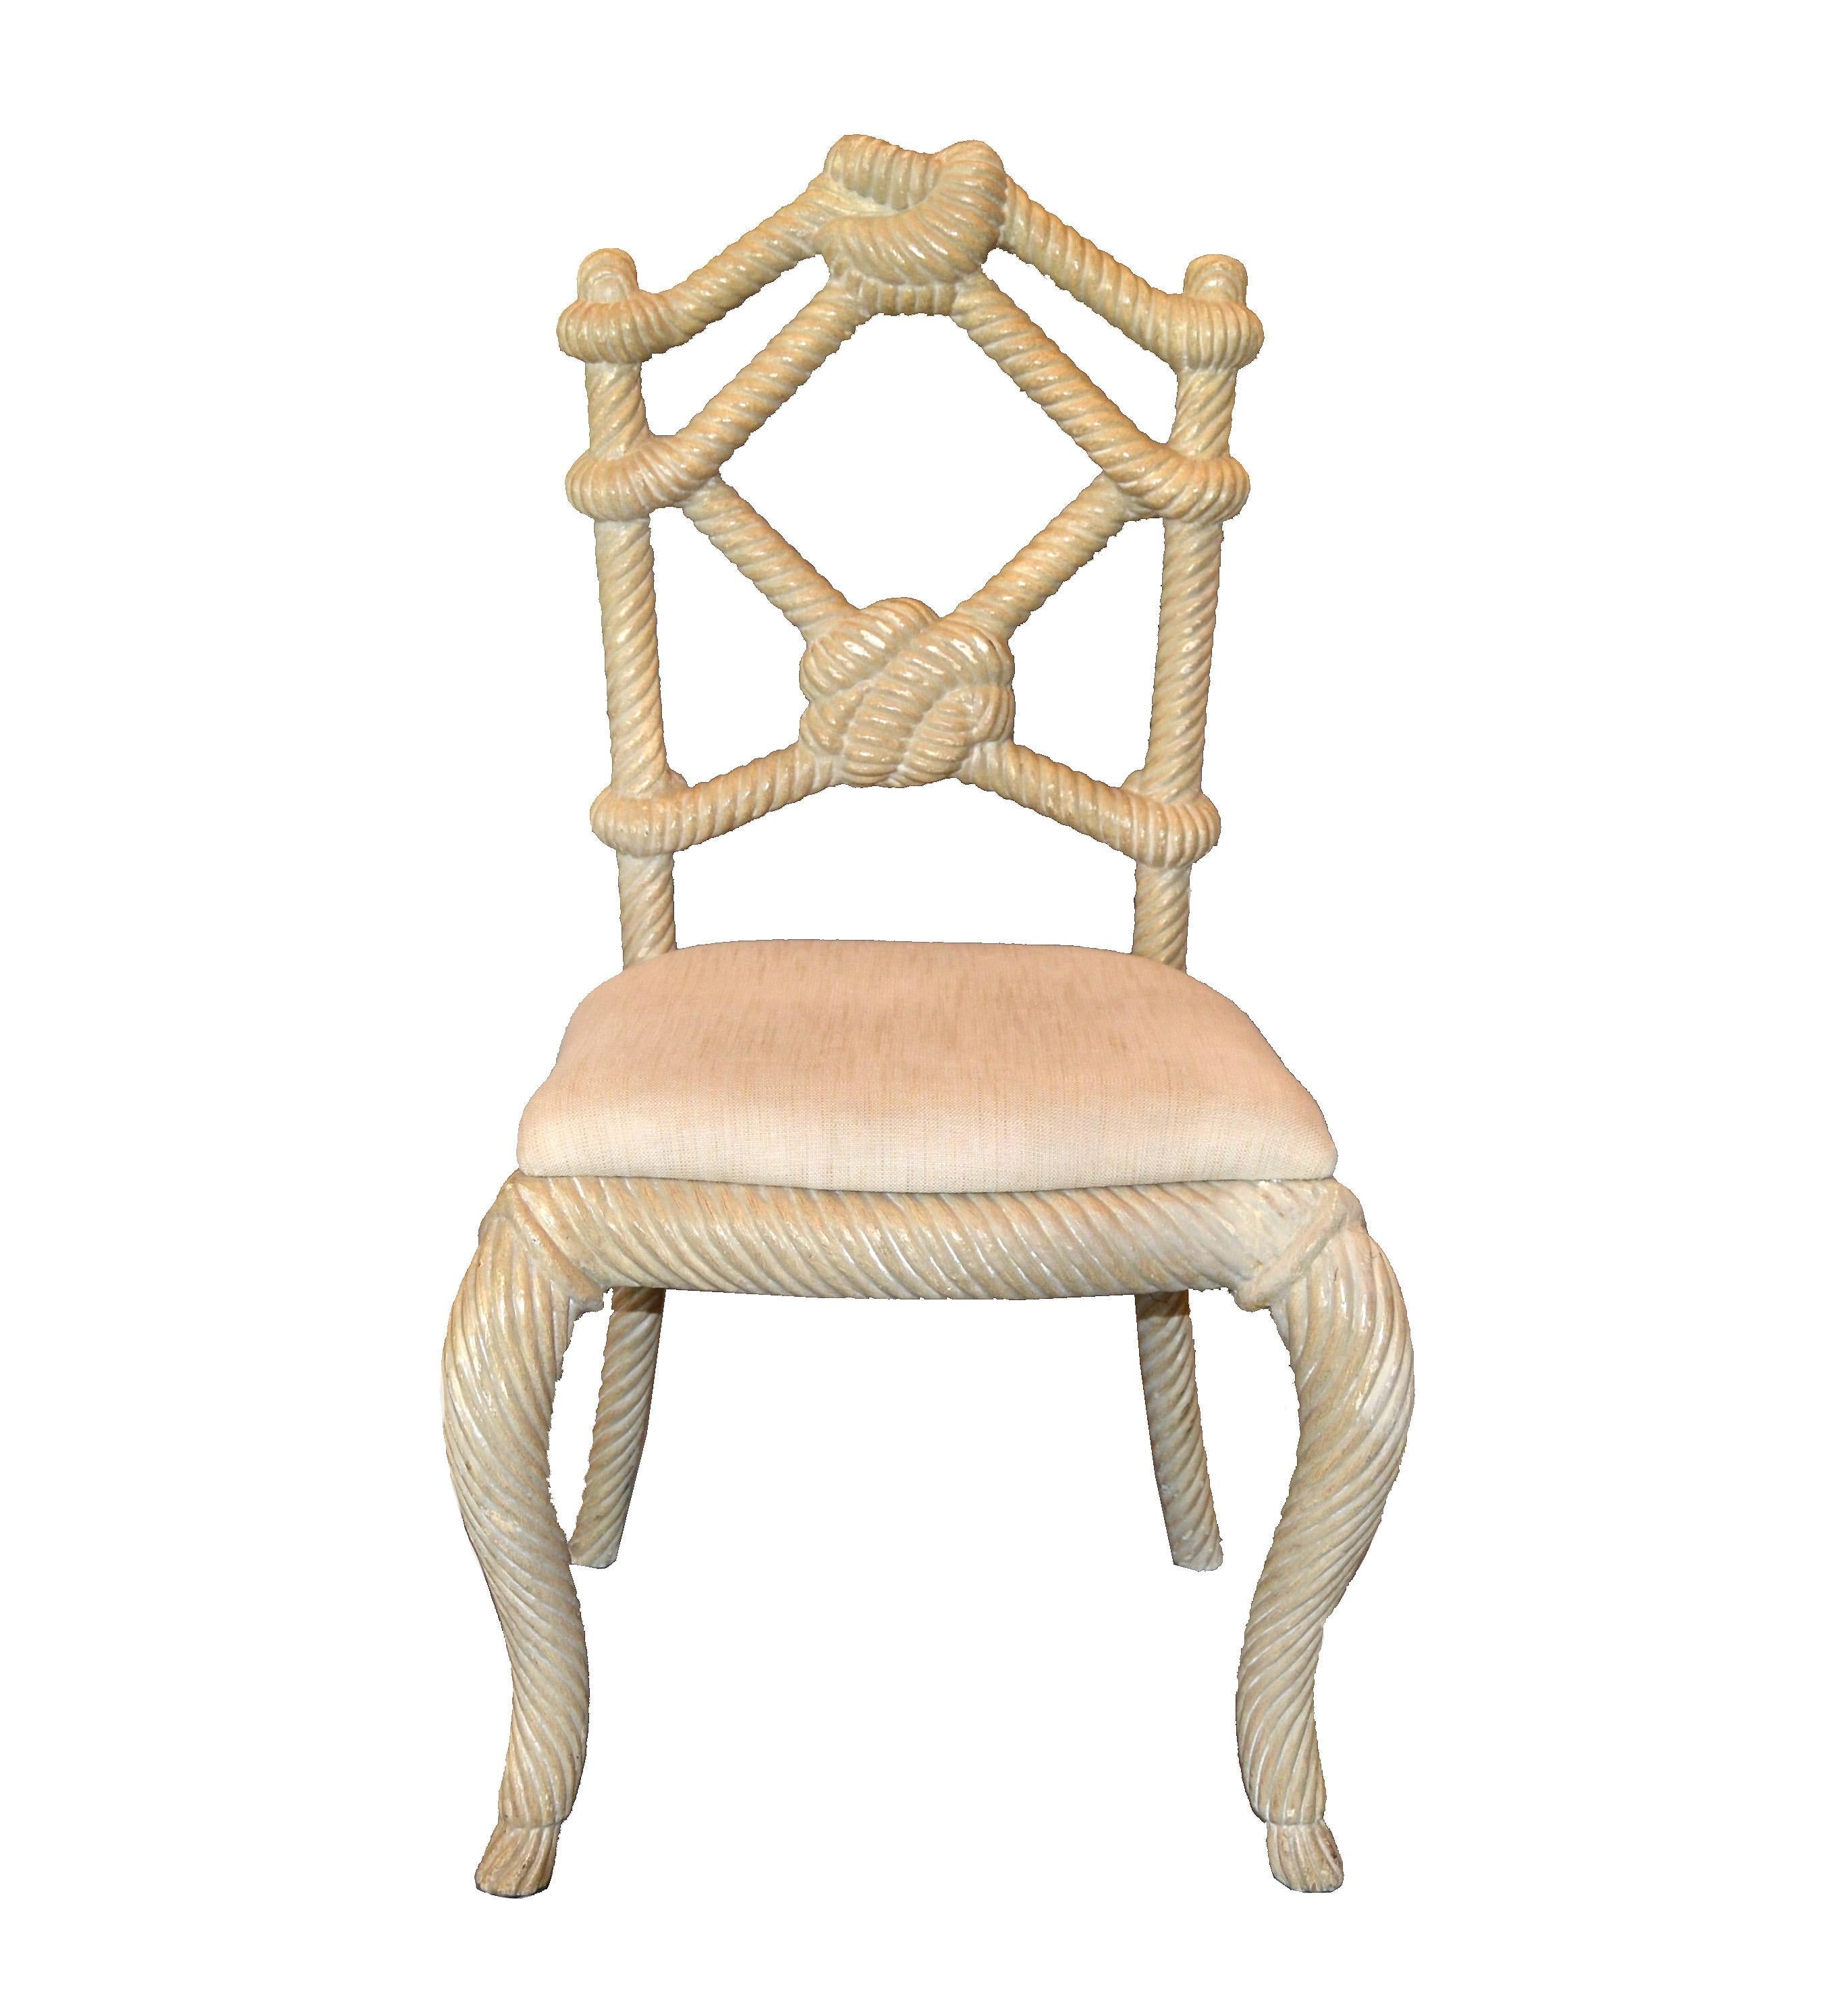 Paire de chaises d'appoint vénitiennes en bois sculpté à la main, avec corde et nœud de cravate, originaires d'Italie.
Ils sont très lourds et très détaillés dans le dossier.
Les pieds ont une forme sculpturale torsadée, très décorative.
Un